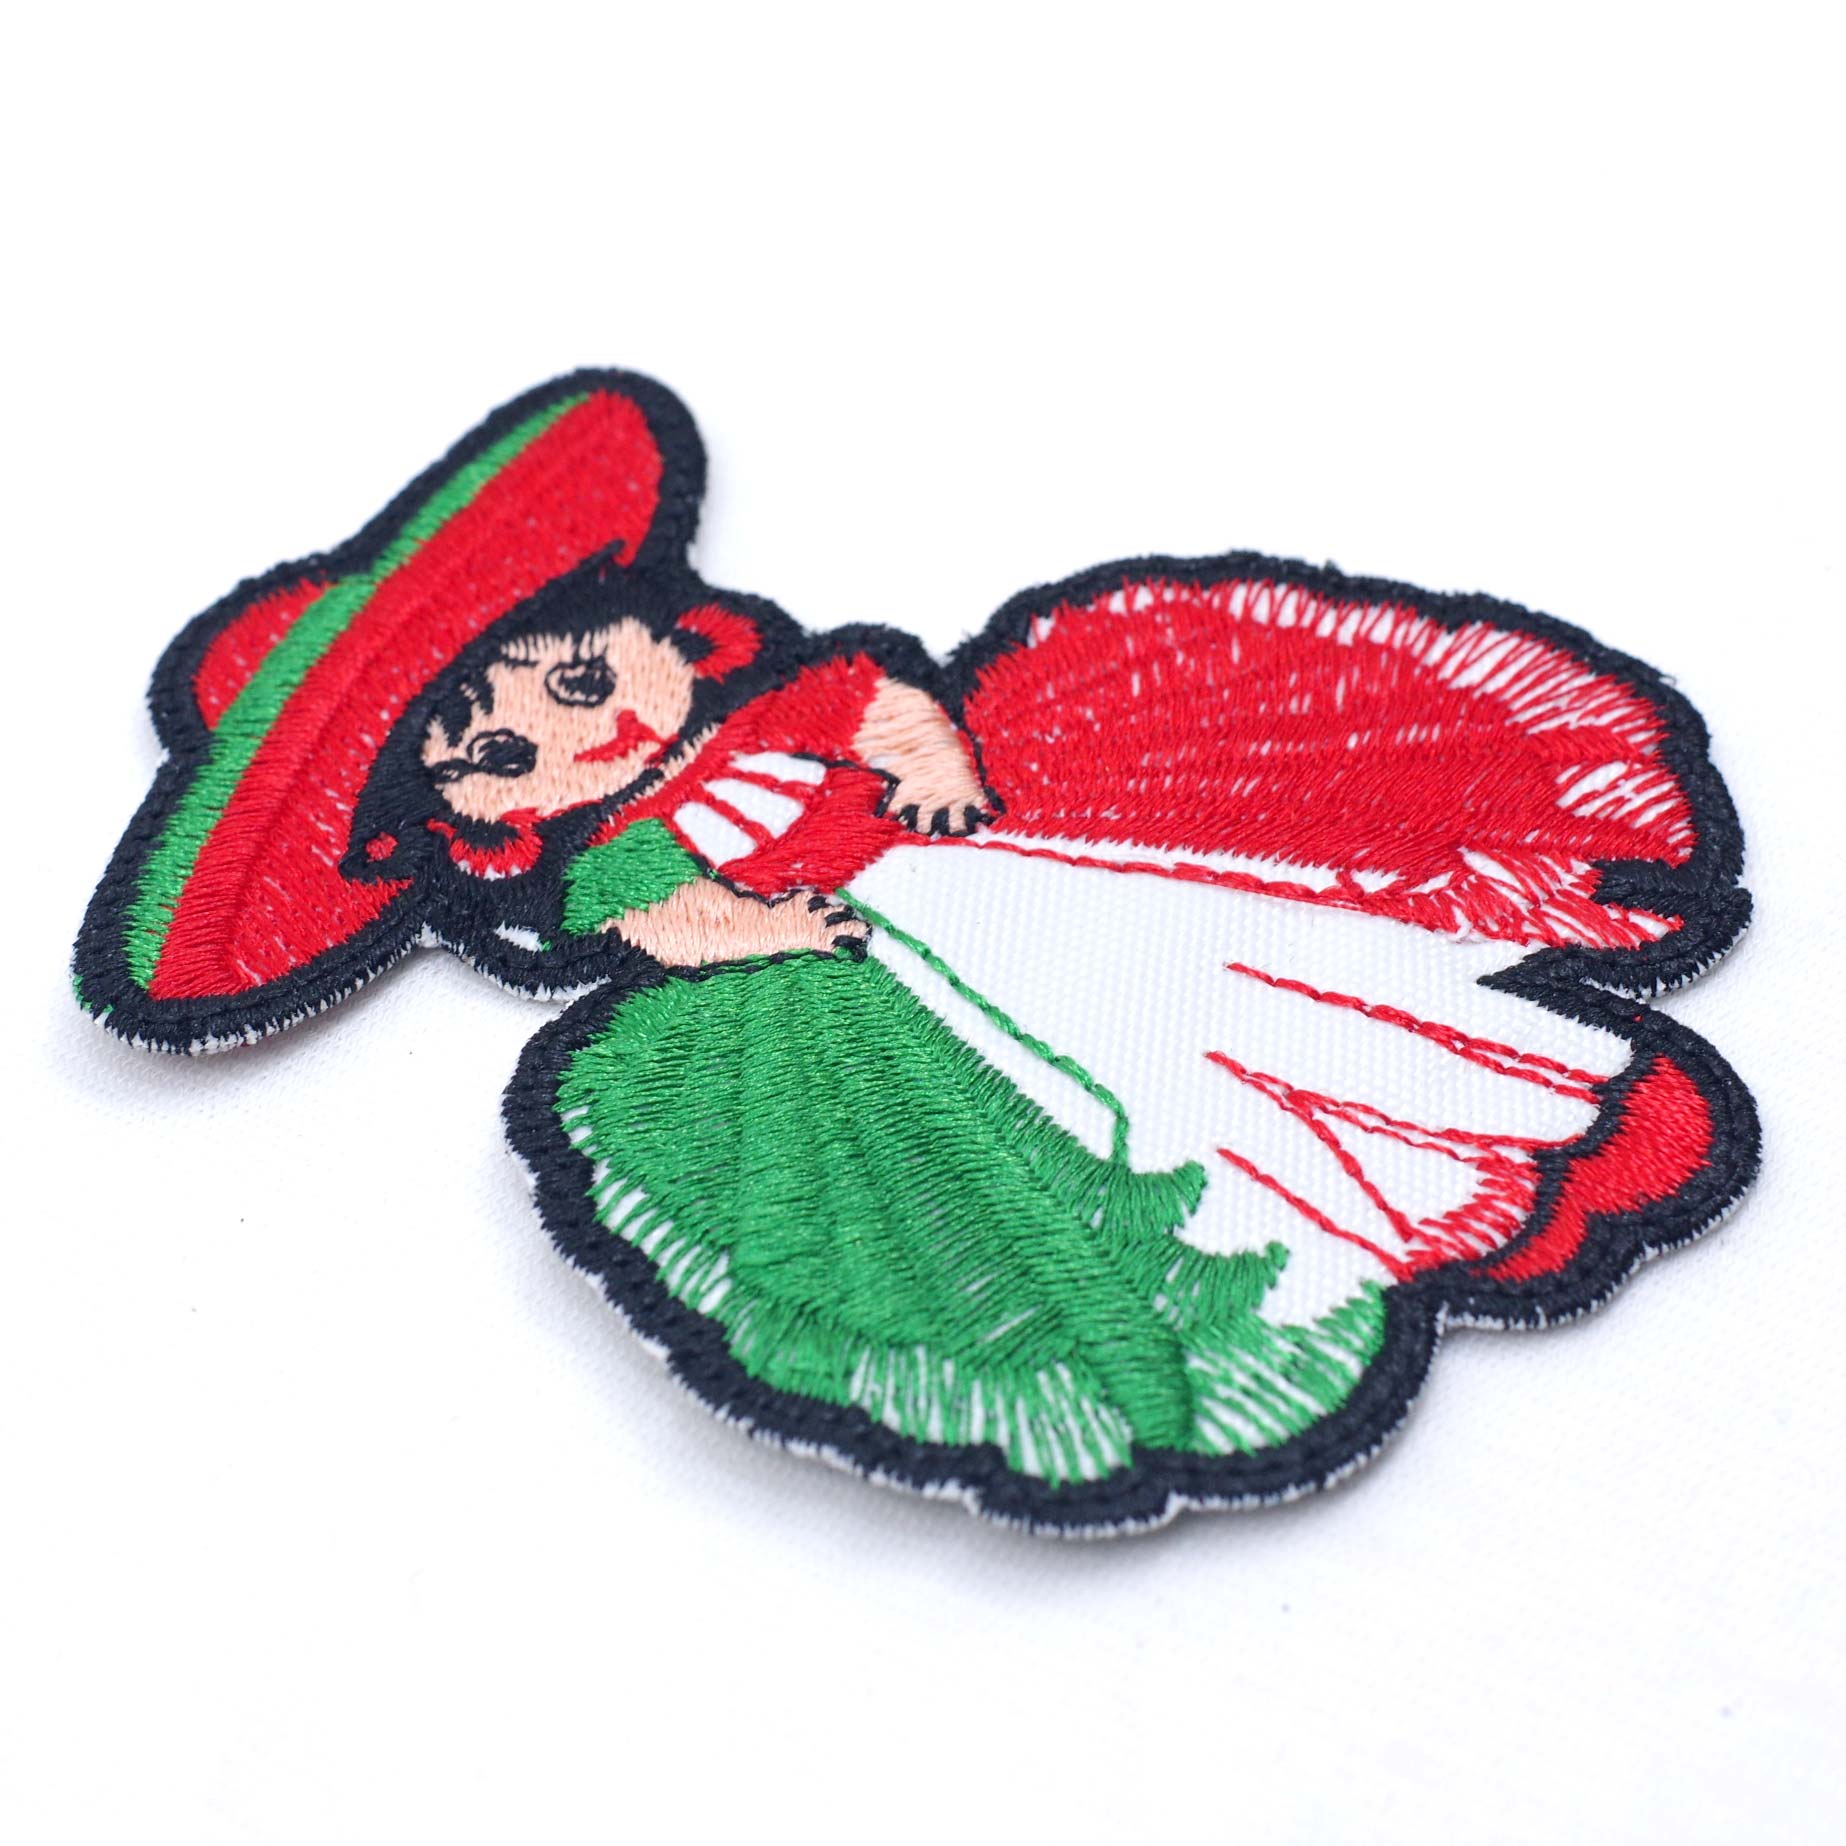 “ワッペン,縫い付け,刺繍,刺繍ワッペン,メキシコ,メキシコ雑貨,メキシコ雑貨PAD”